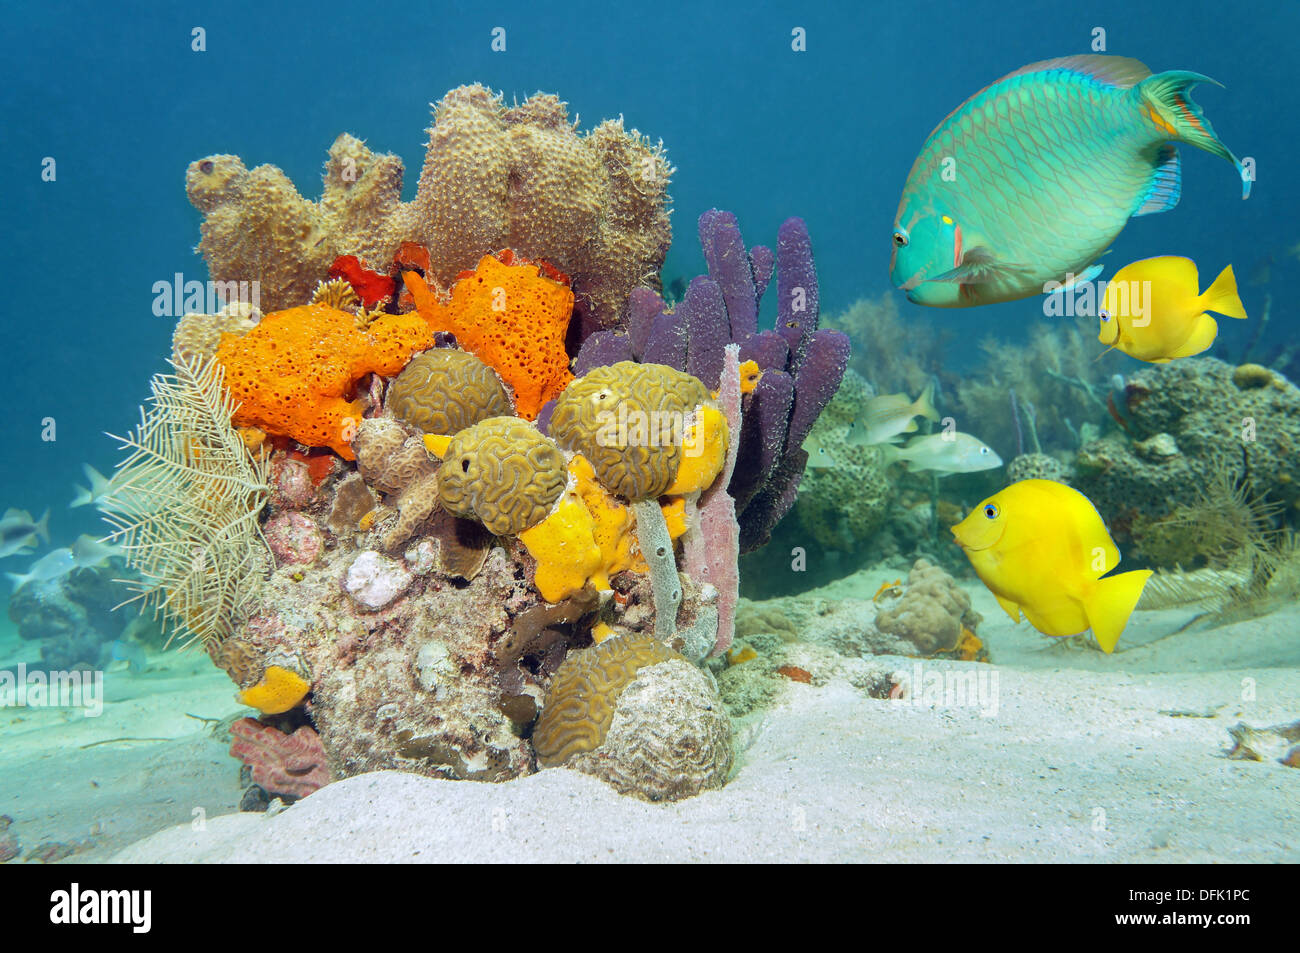 Couleurs de la vie marine sous l'eau avec les poissons tropicaux, coraux et éponges de mer, océan Atlantique Banque D'Images